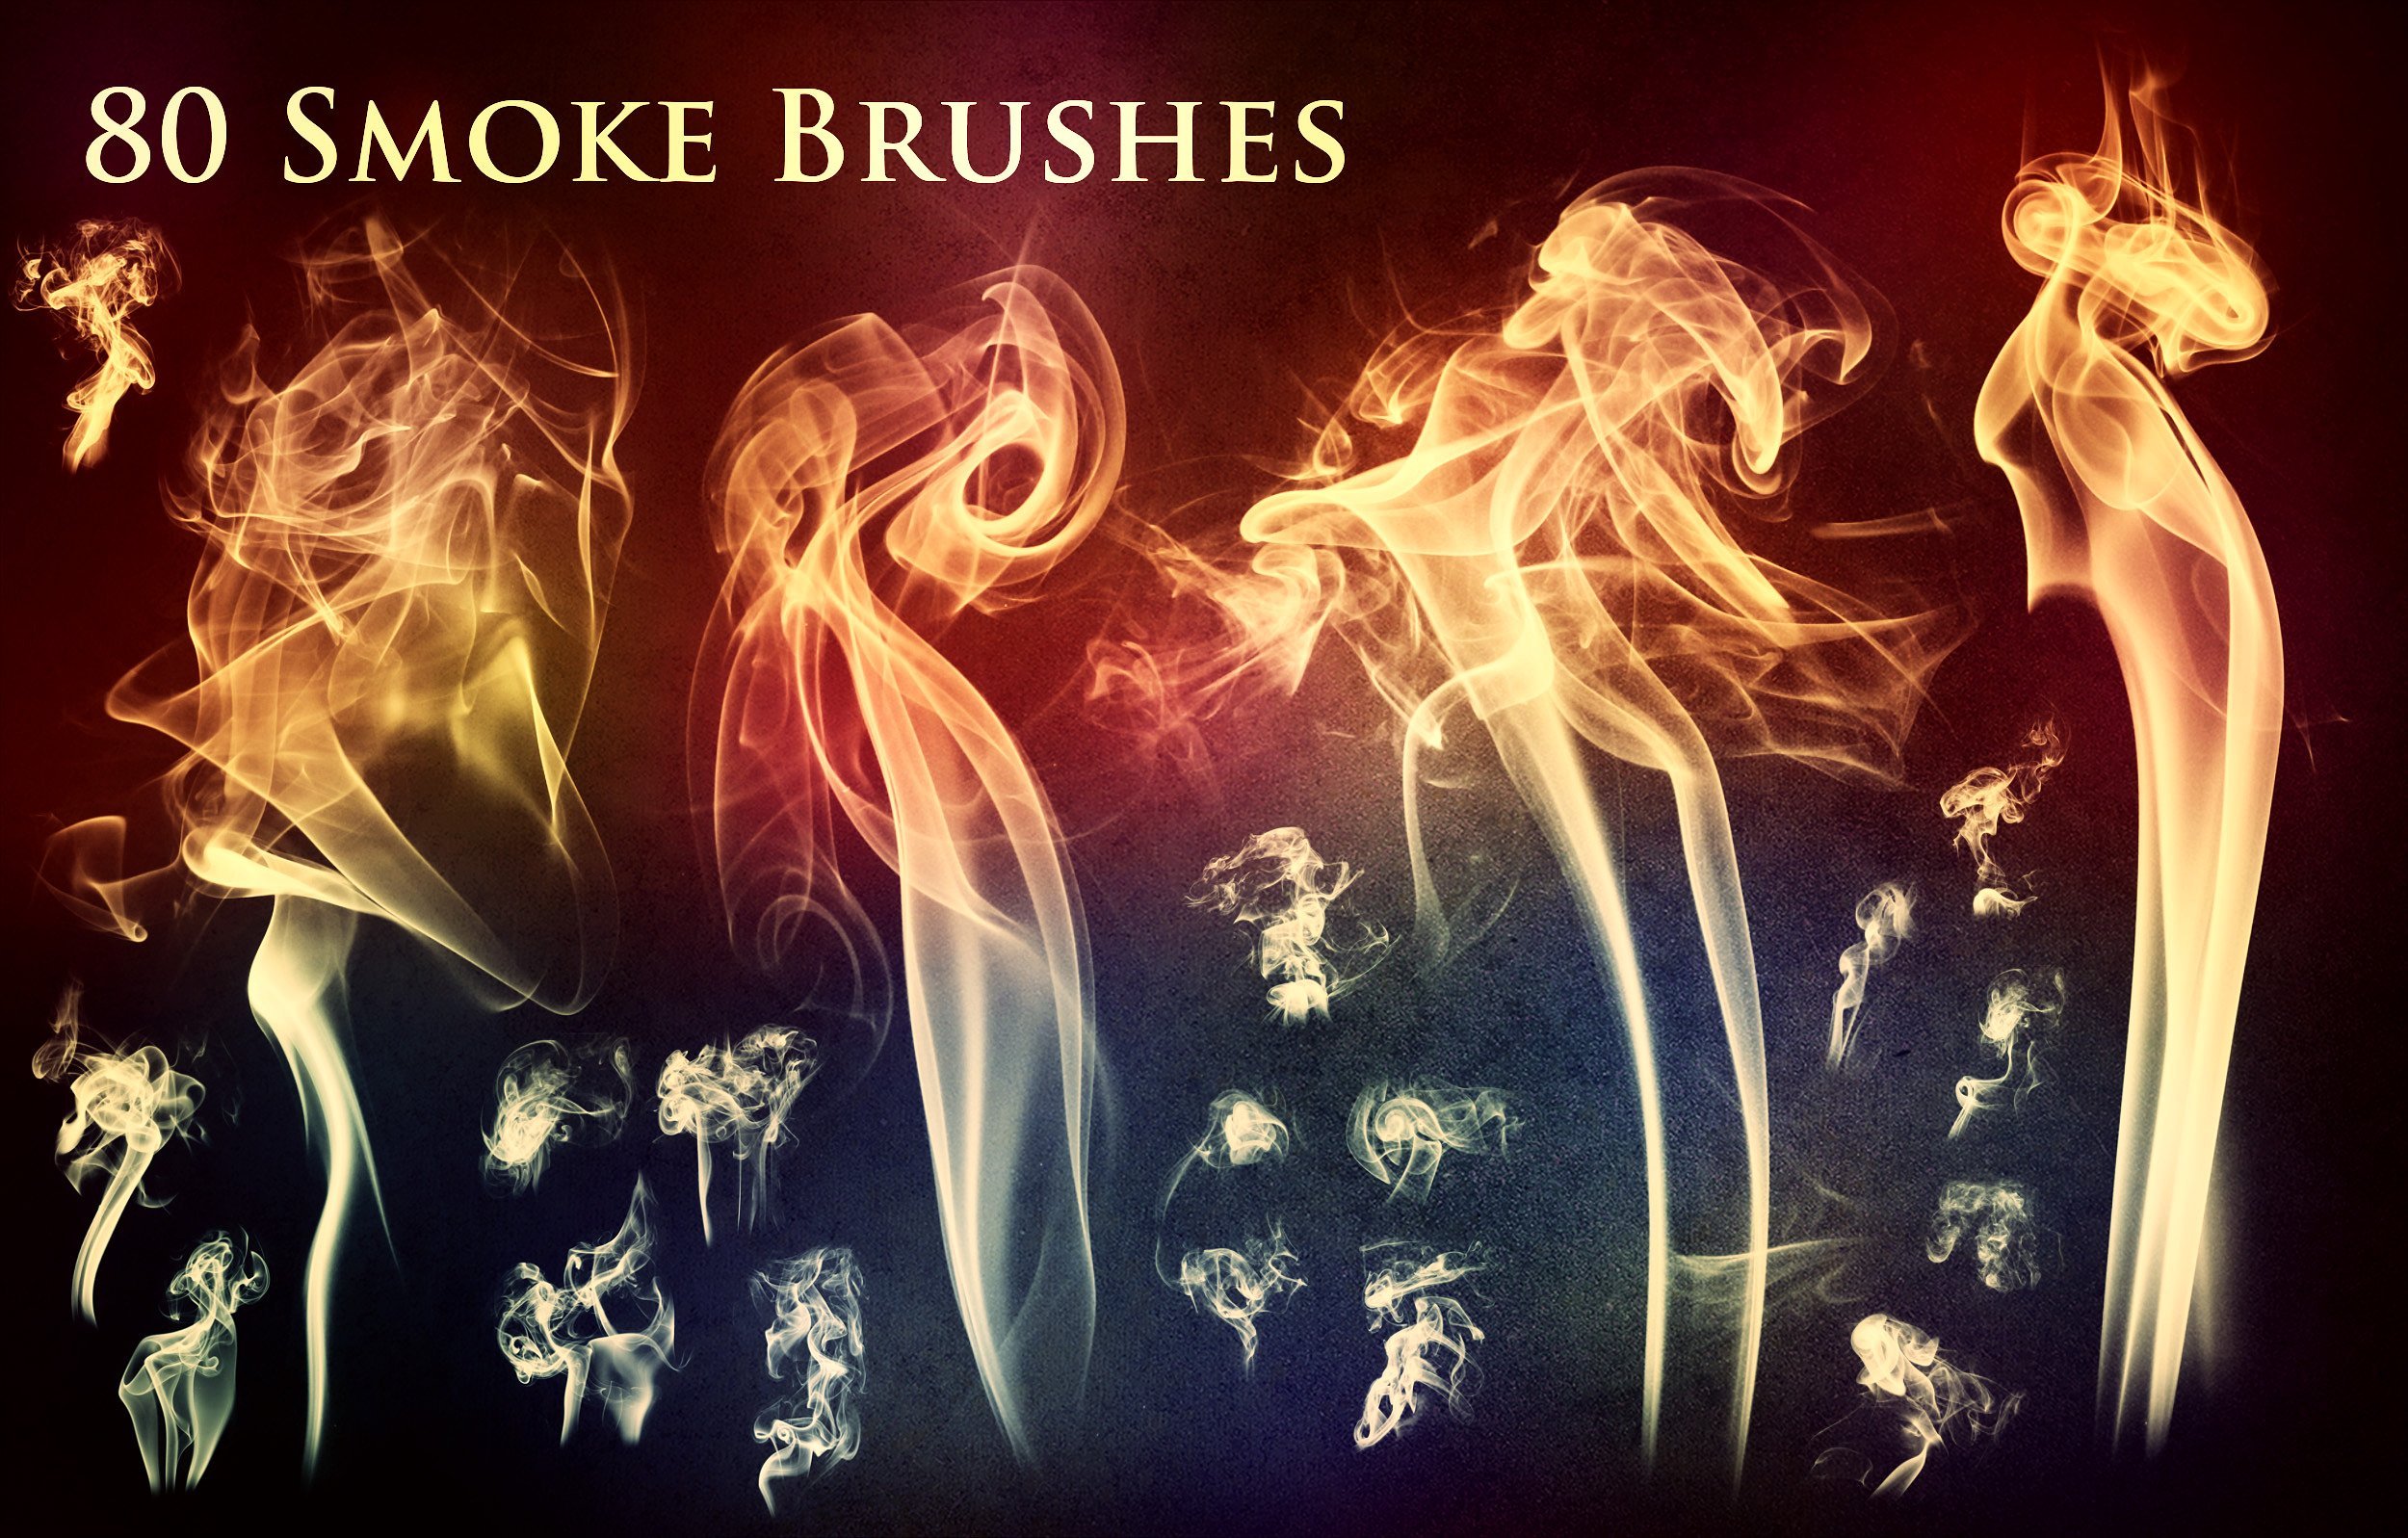 80 smoke brushes.